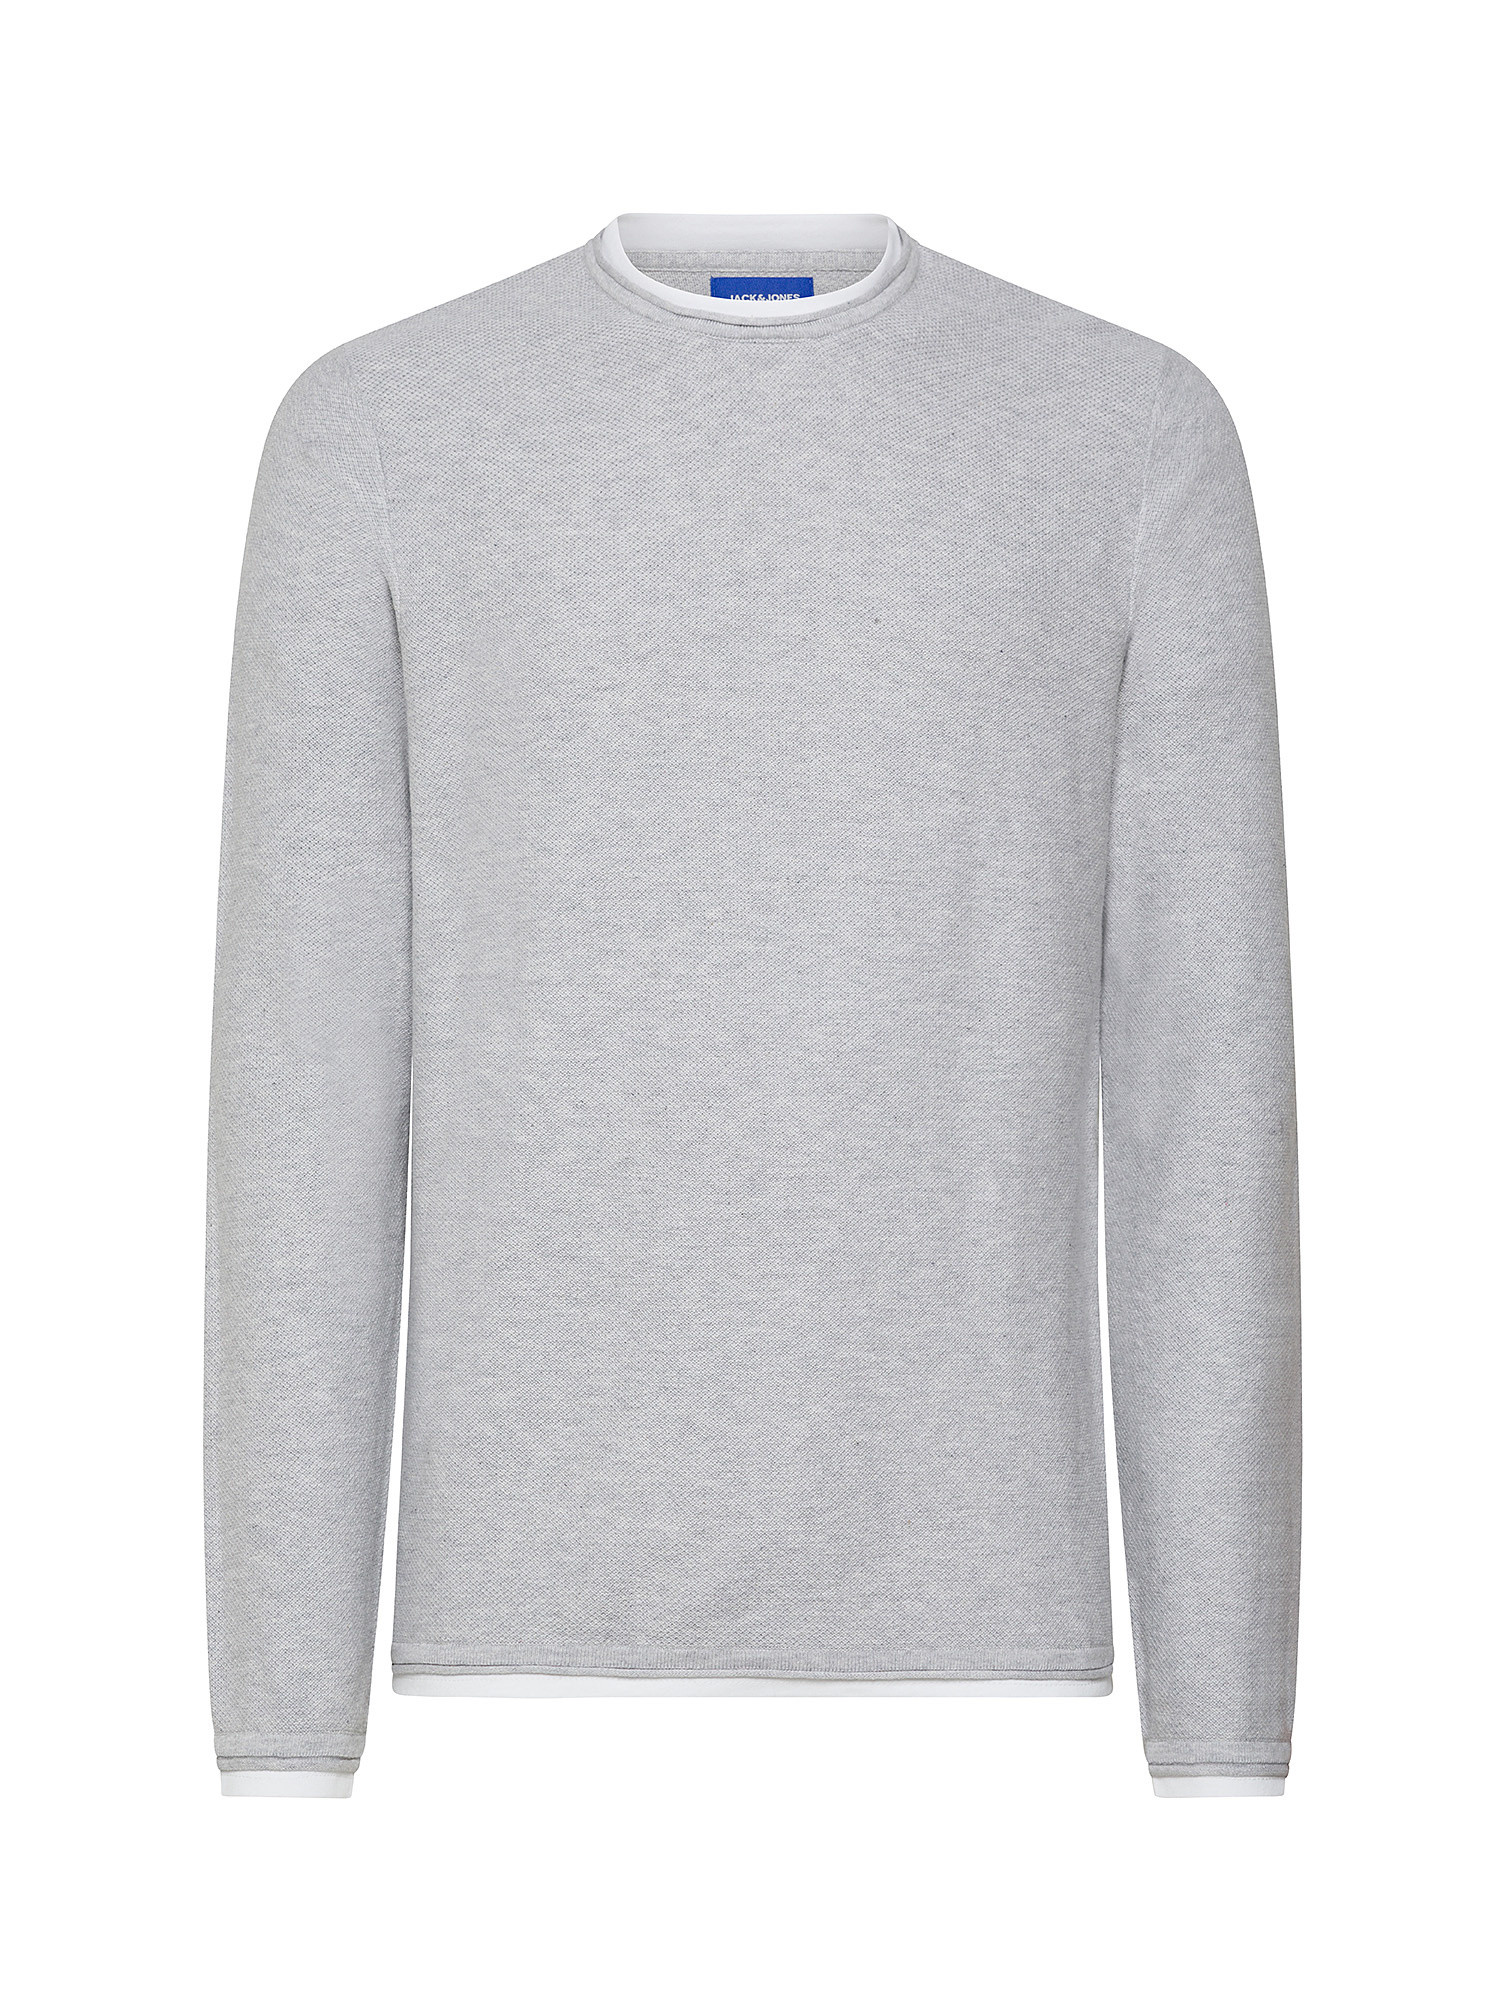 Jack & Jones - Cotton pullover, Light Grey, large image number 0